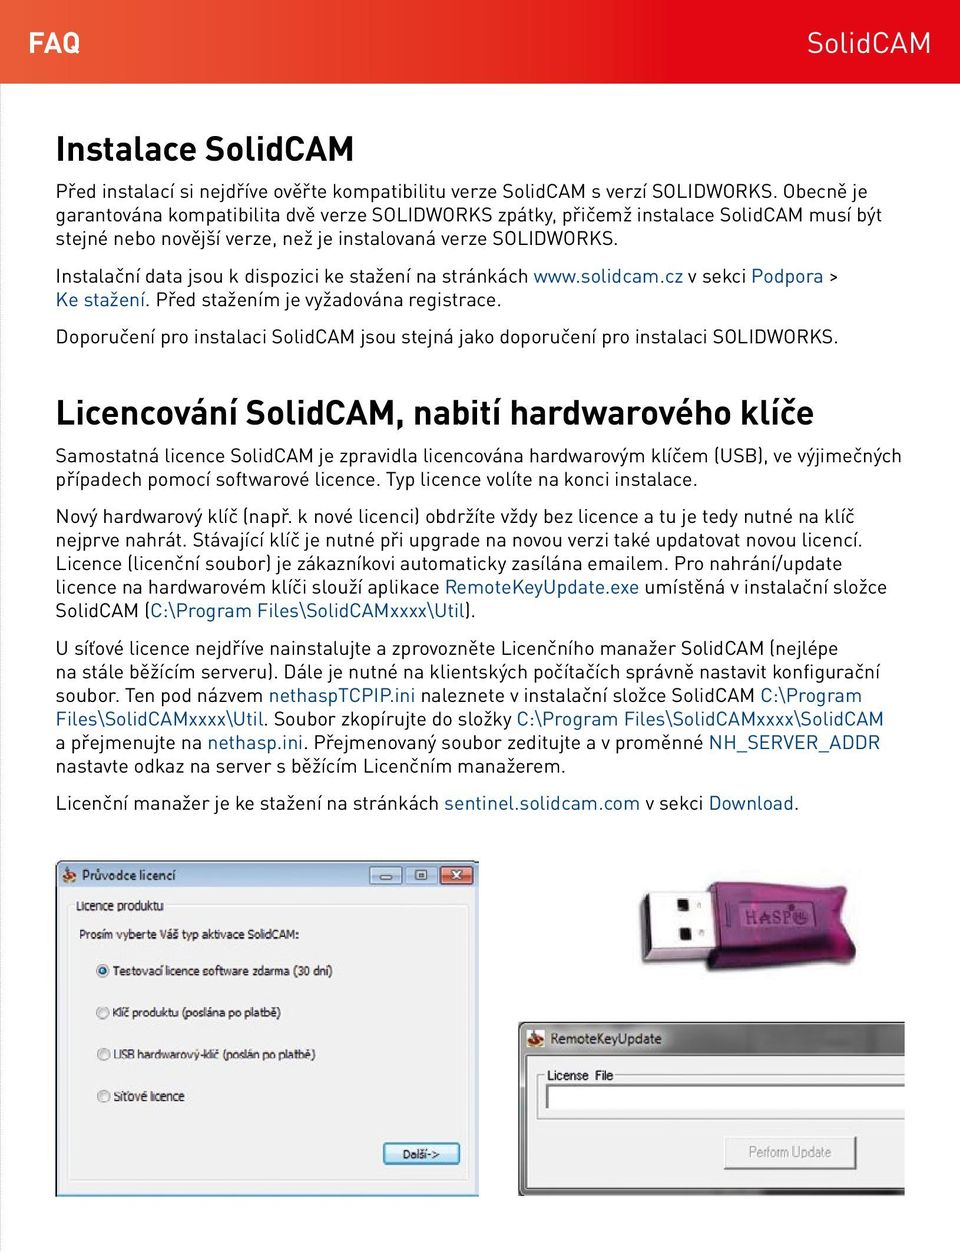 Instalační data jsou k dispozici ke stažení na stránkách www.solidcam.cz v sekci Podpora > Ke stažení. Před stažením je vyžadována registrace.